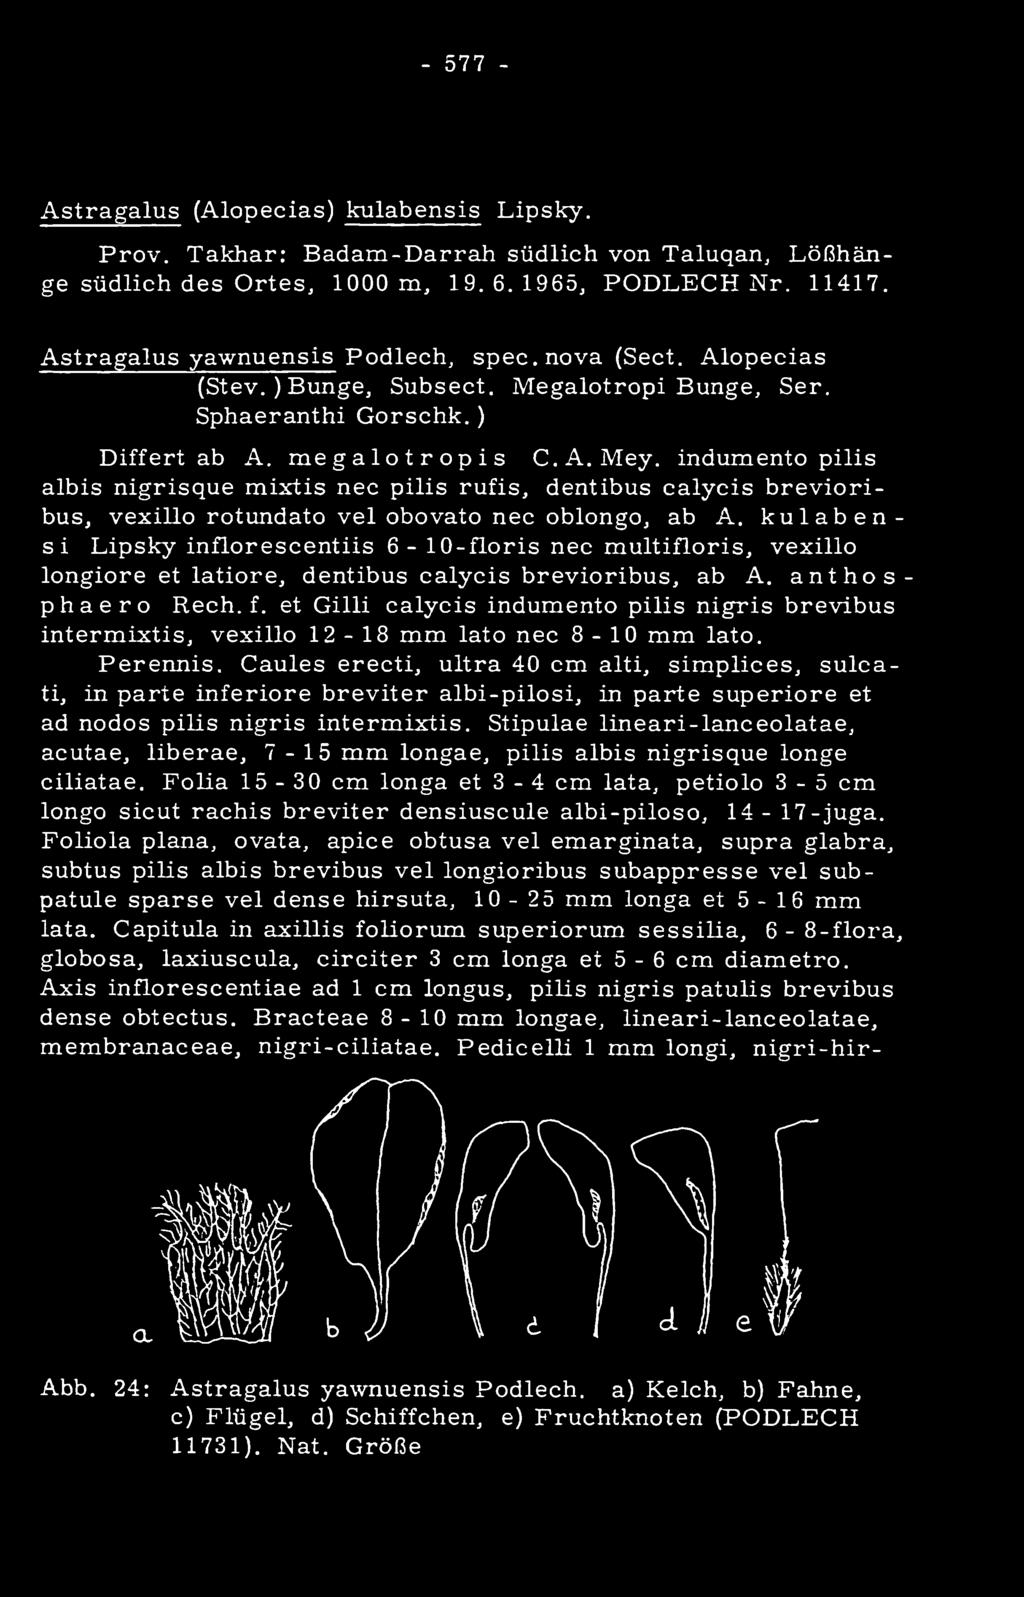 et Gilli calycis indumento pilis nigris brevibus intermixtis, vexillo 12-18 mm lato nee 8-10 mm lato. Perennis.